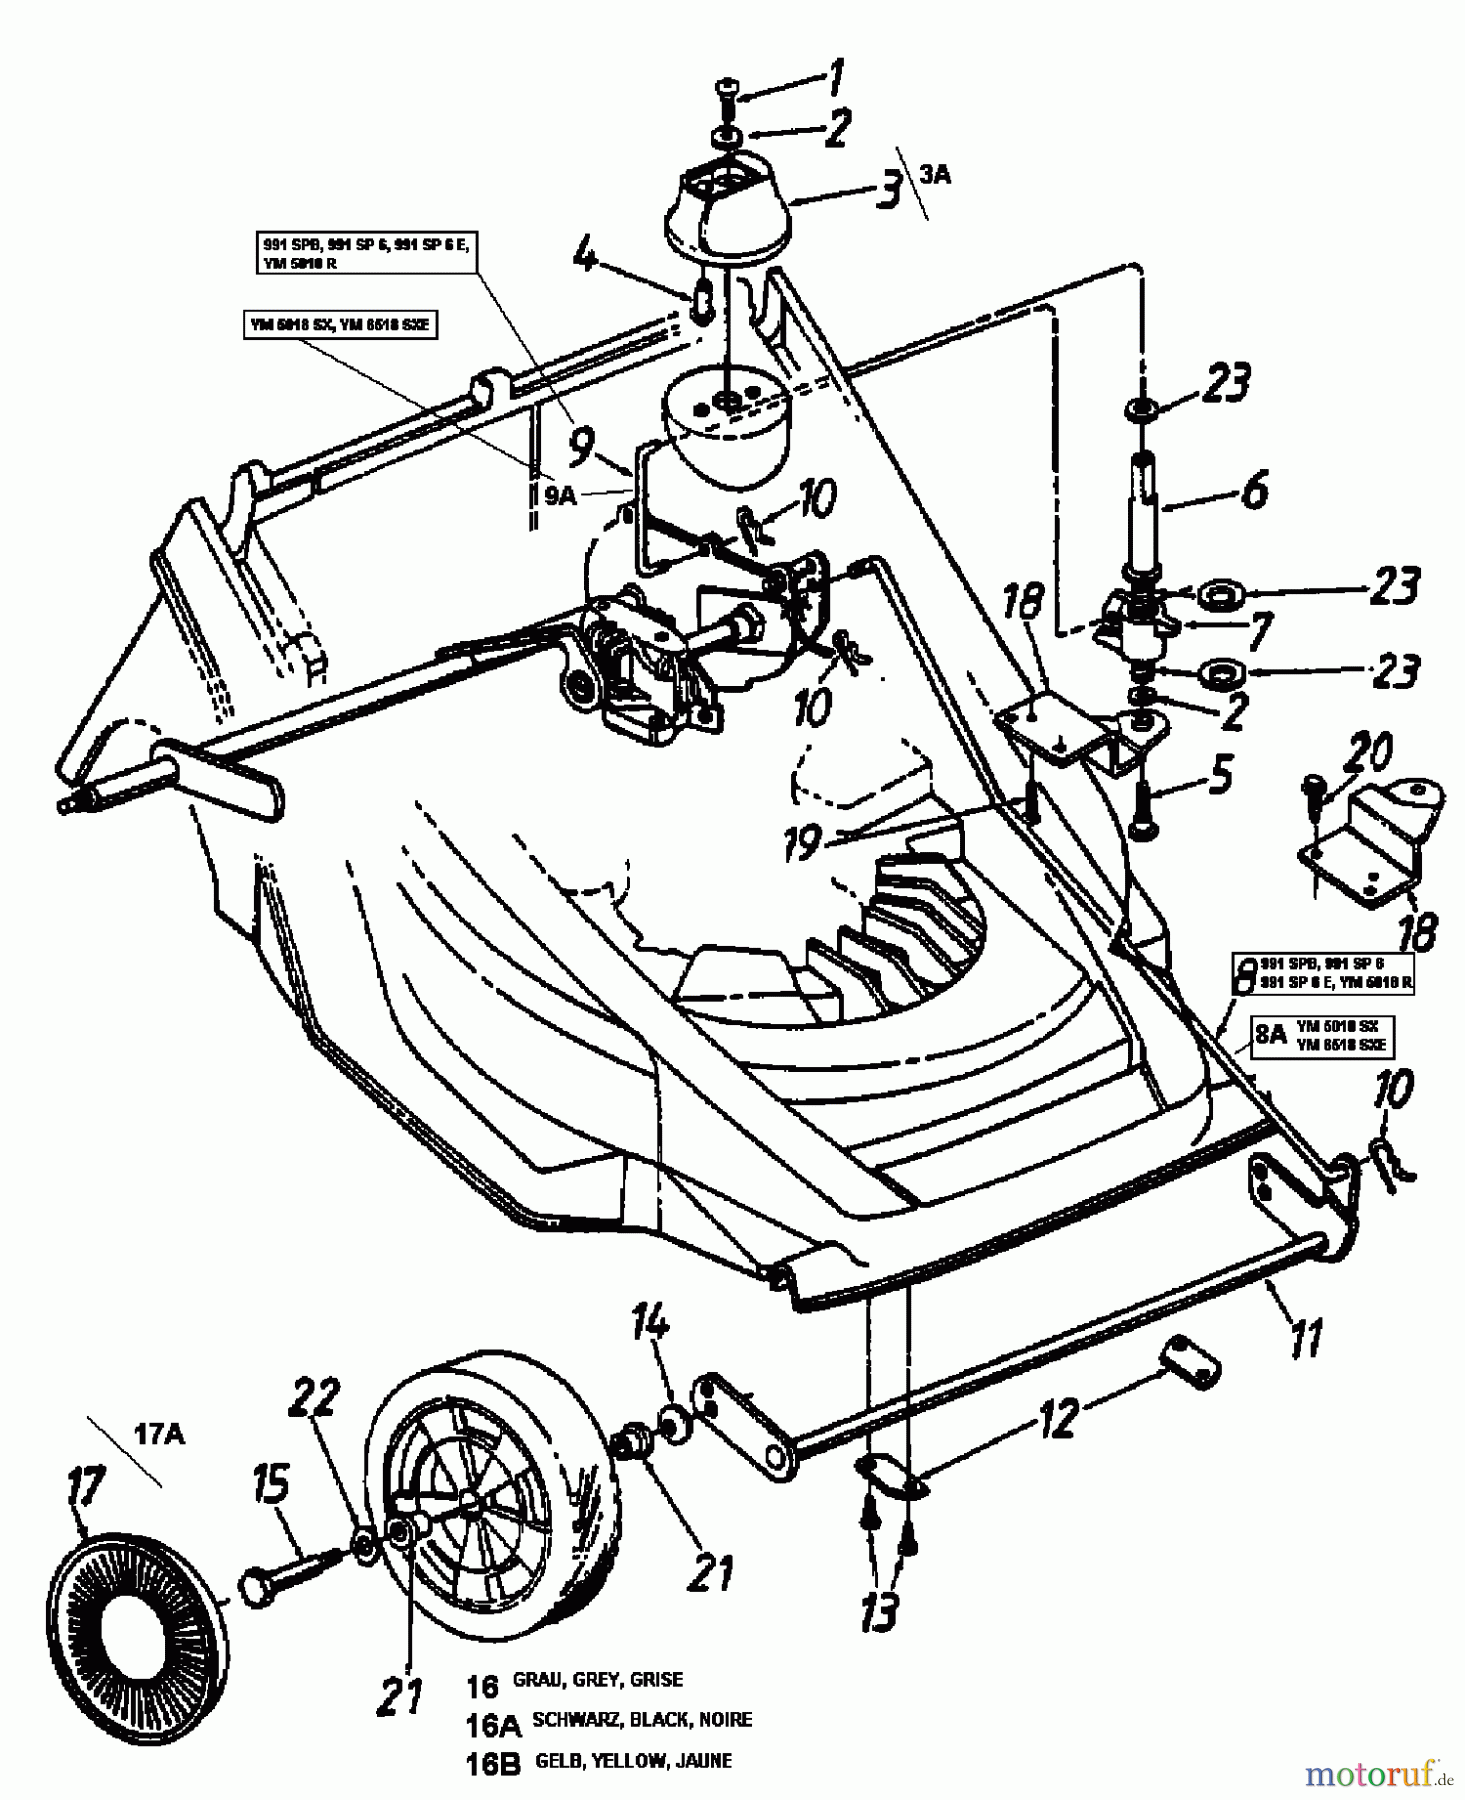  Lawnflite Motormäher mit Antrieb 991 SP 6 12B-658C611  (2000) Räder vorne, Schnitthöhenverstellung